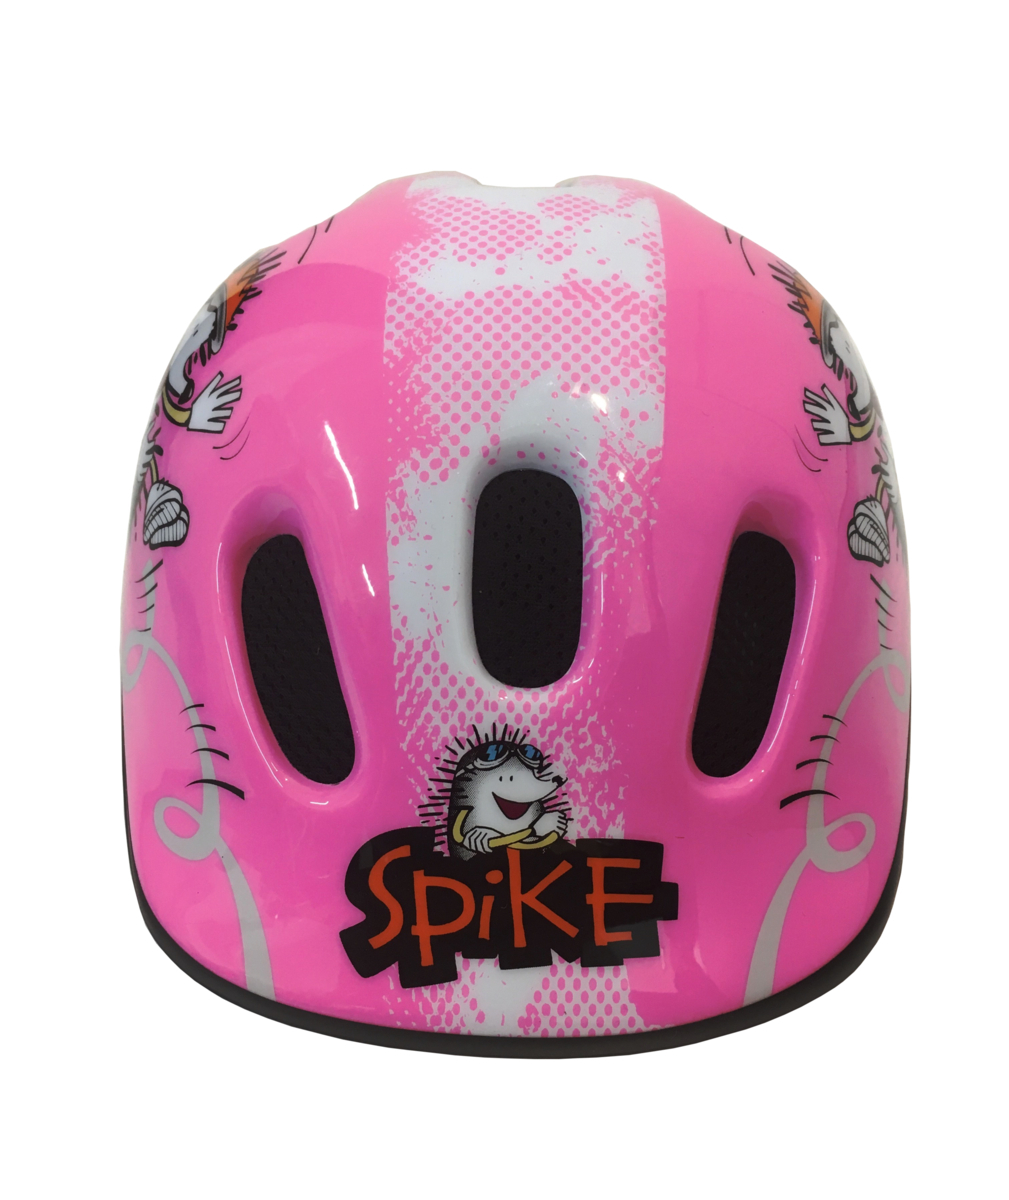 自転車 子どもヘルメット Polisport ポリスポート スパイク ピンク XXS 44-48cm 軽量 通気性良好 CE EN1078適合品_画像2